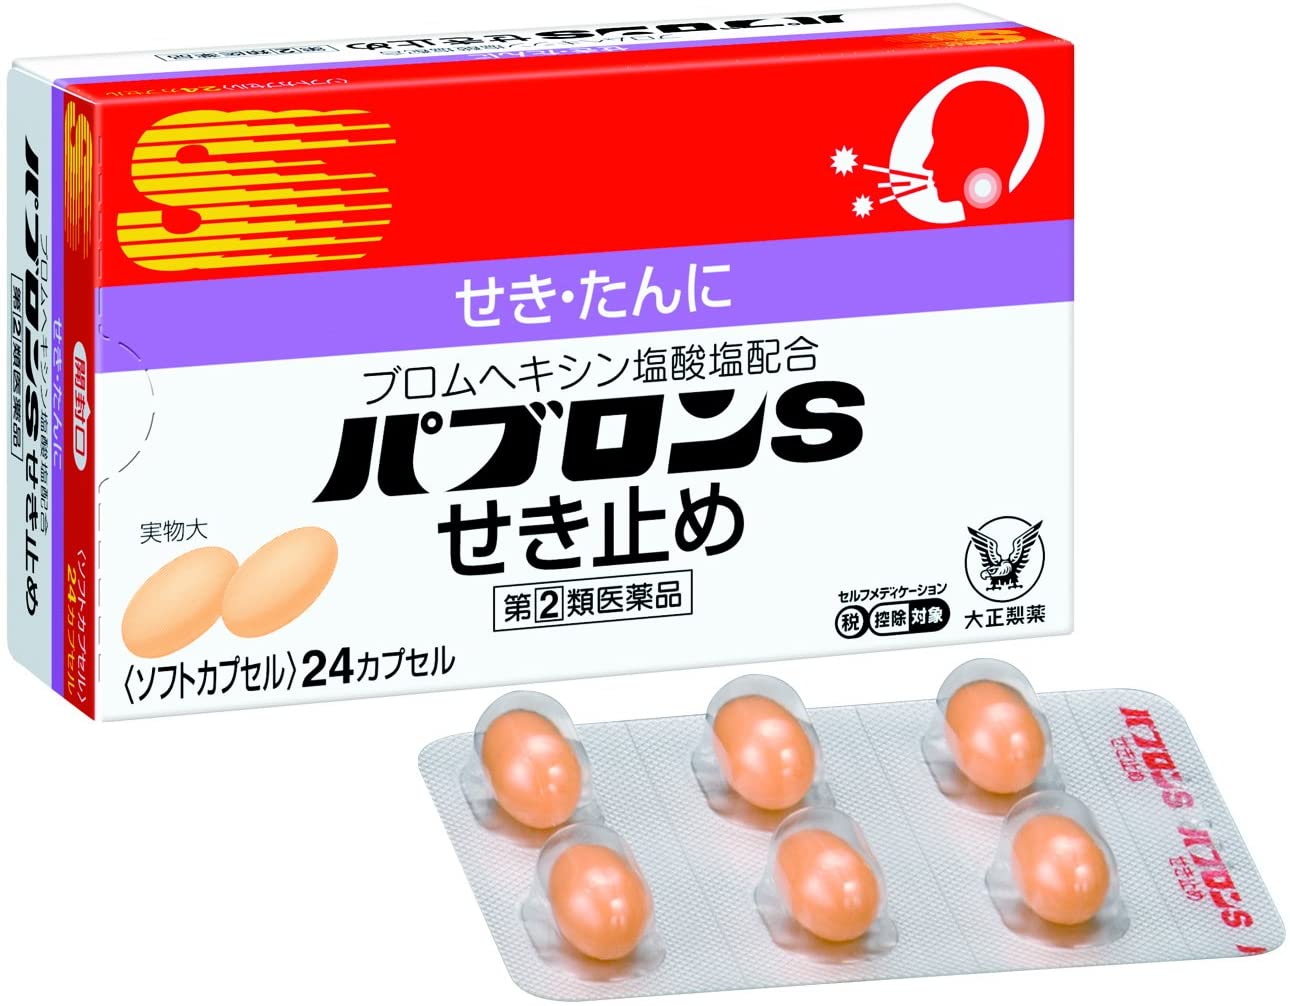 Японские препараты купить. Японские таблетки от кашля. Японские таблетки от аллергии. Японские таблетки от поллиноза. Японские таблетки от простуды.